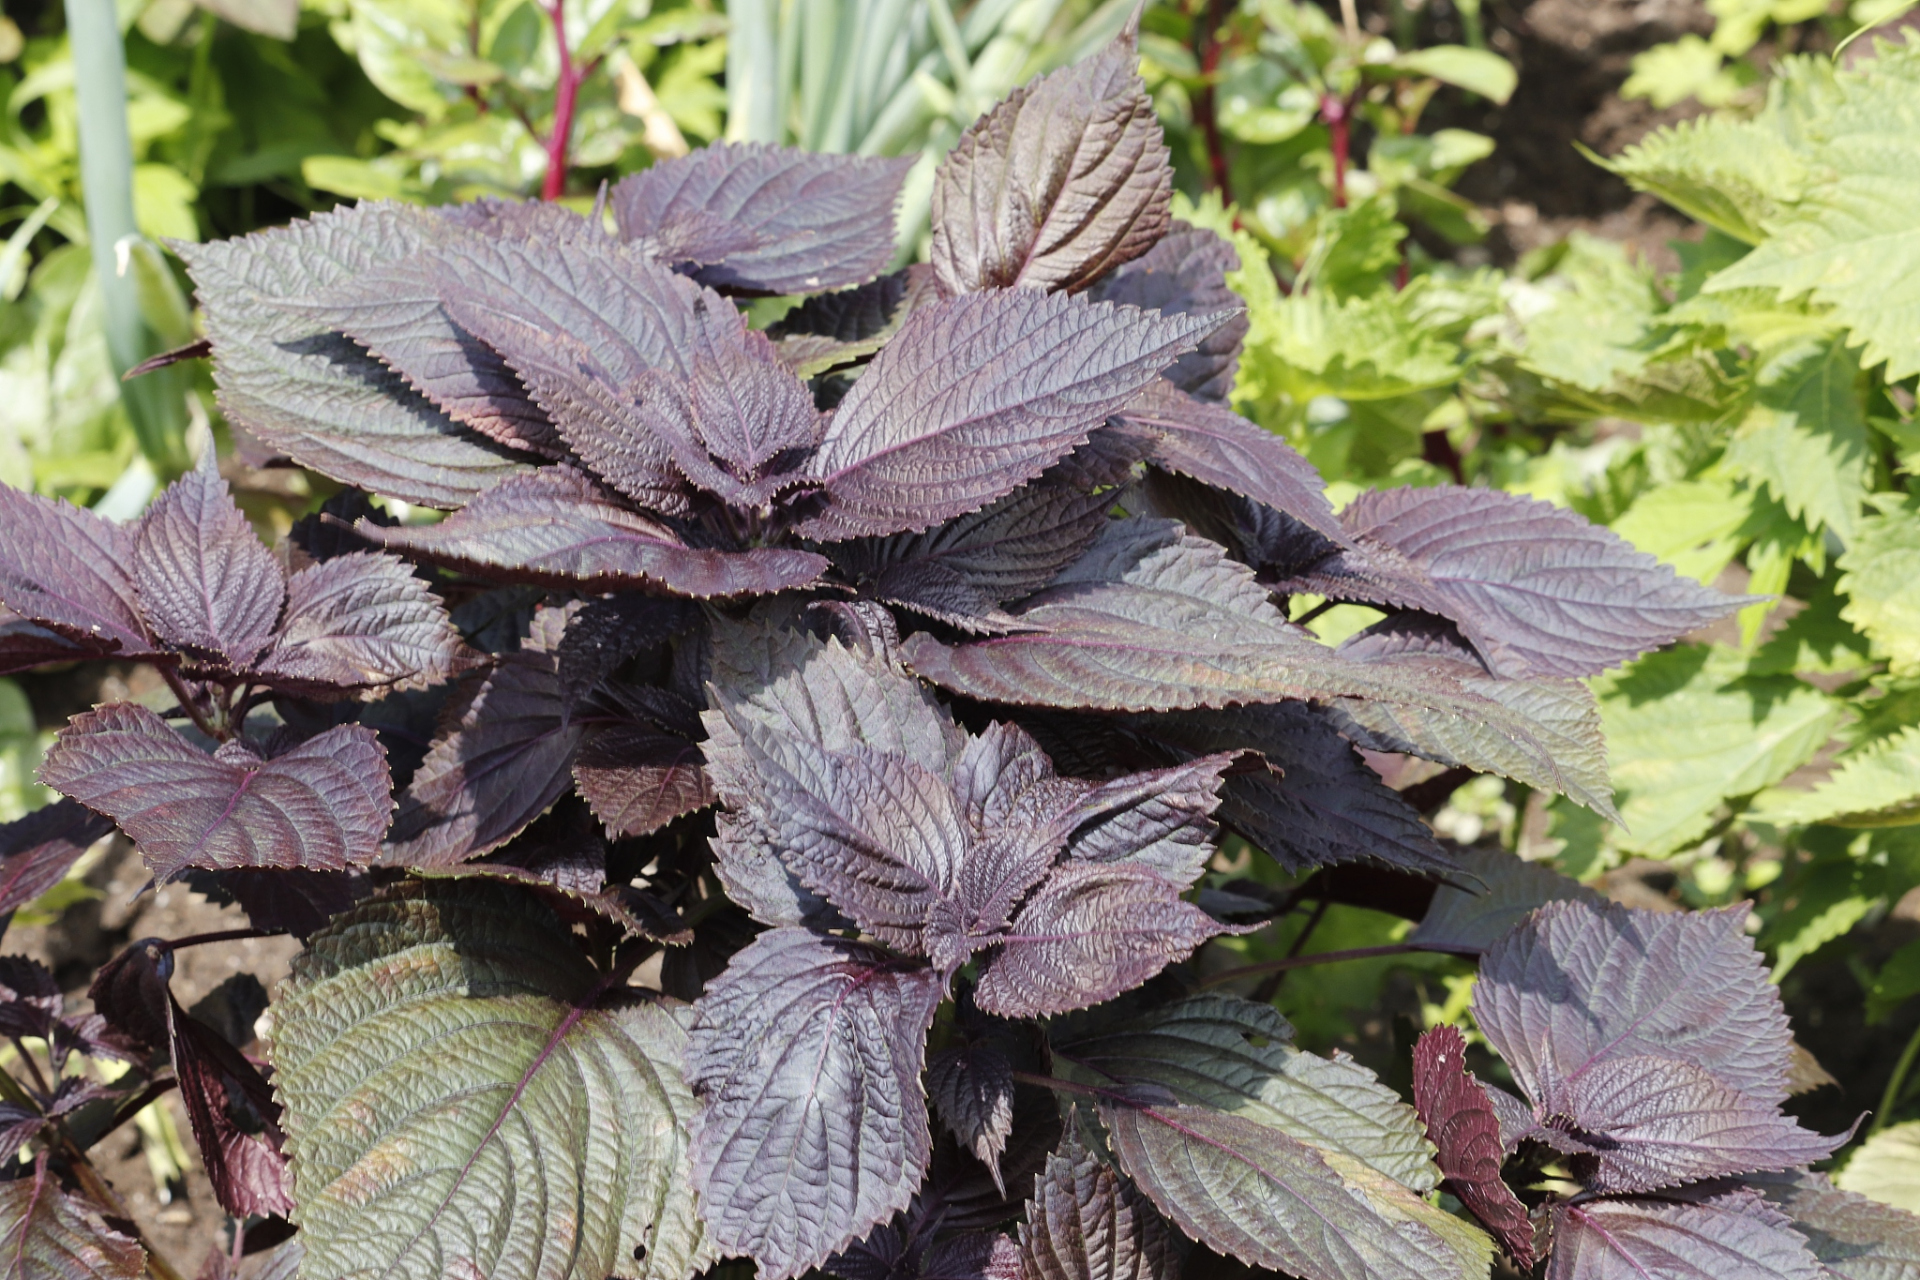 紫苏是一种具有浓郁香气的草本植物,常用于烹饪和药用